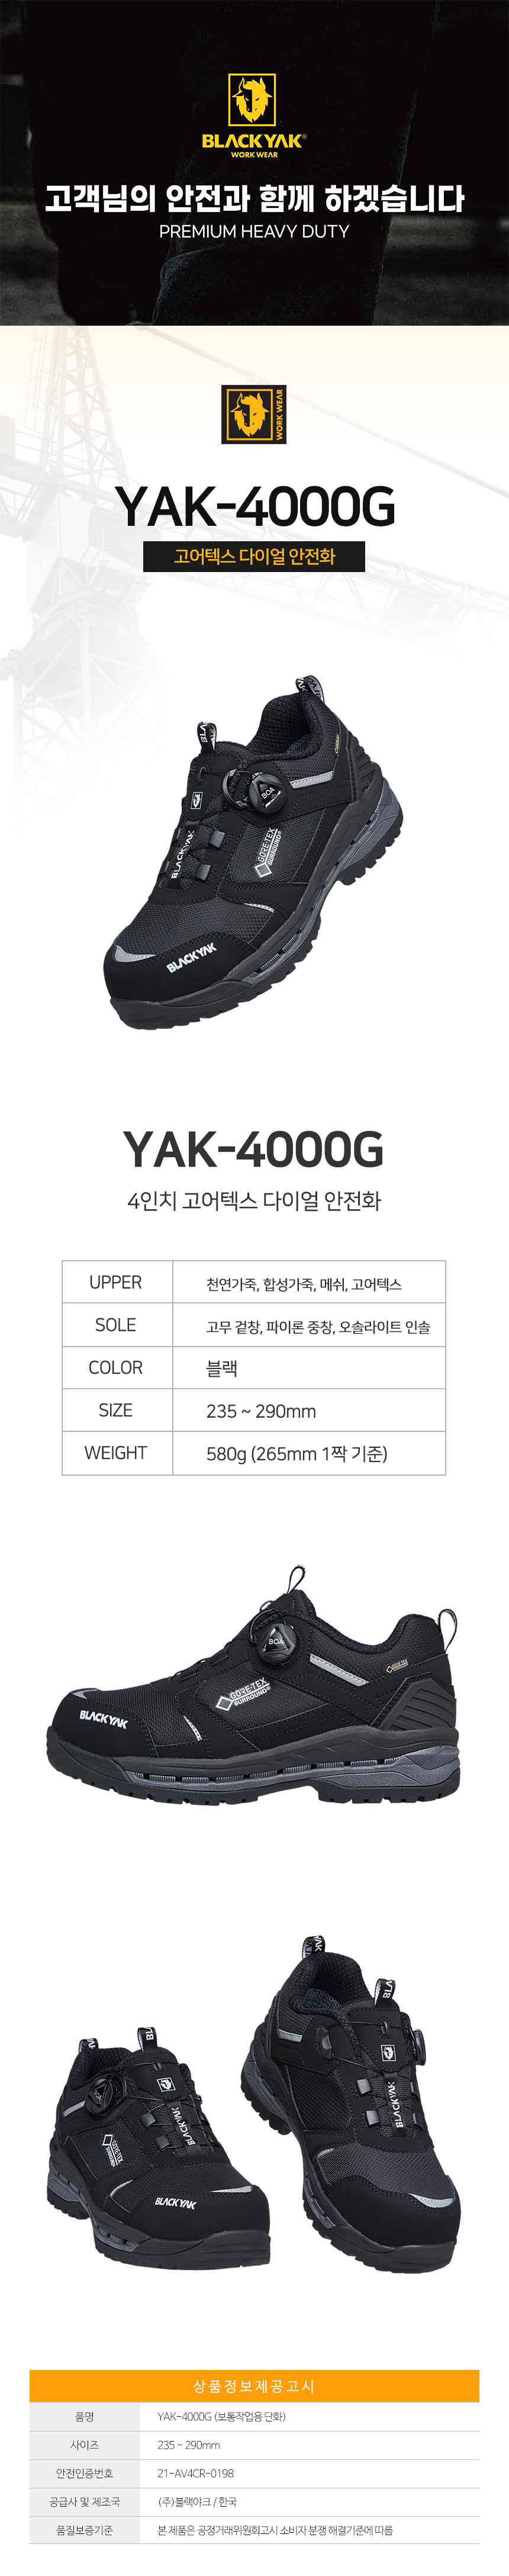 YAK-4000G_d01.jpg